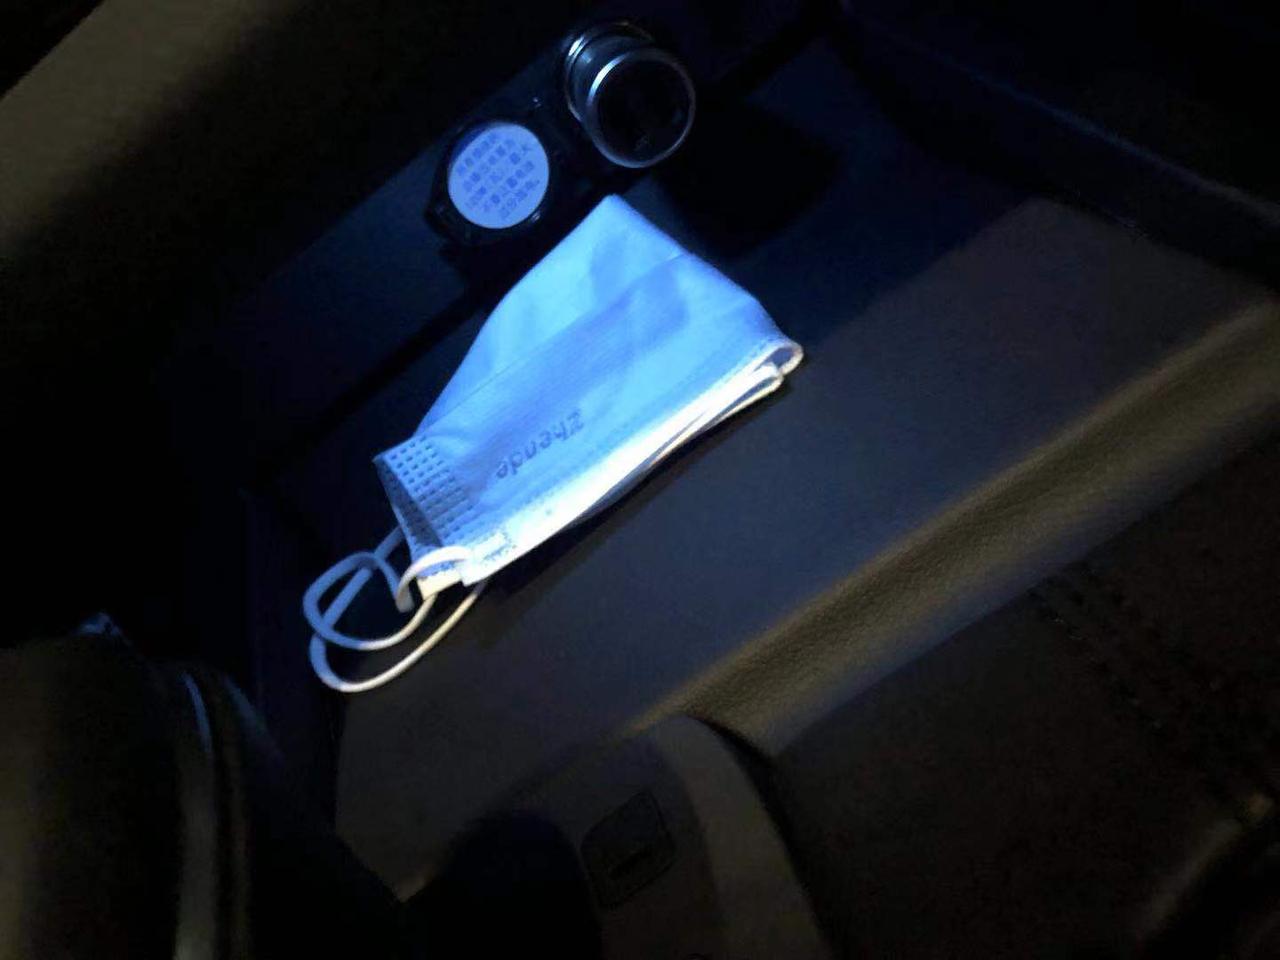 丰田亚洲龙 今天发现挂挡杆前边的储物格里有个蓝色的灯锁车后也一直亮着，以前没注意。不知道正常不